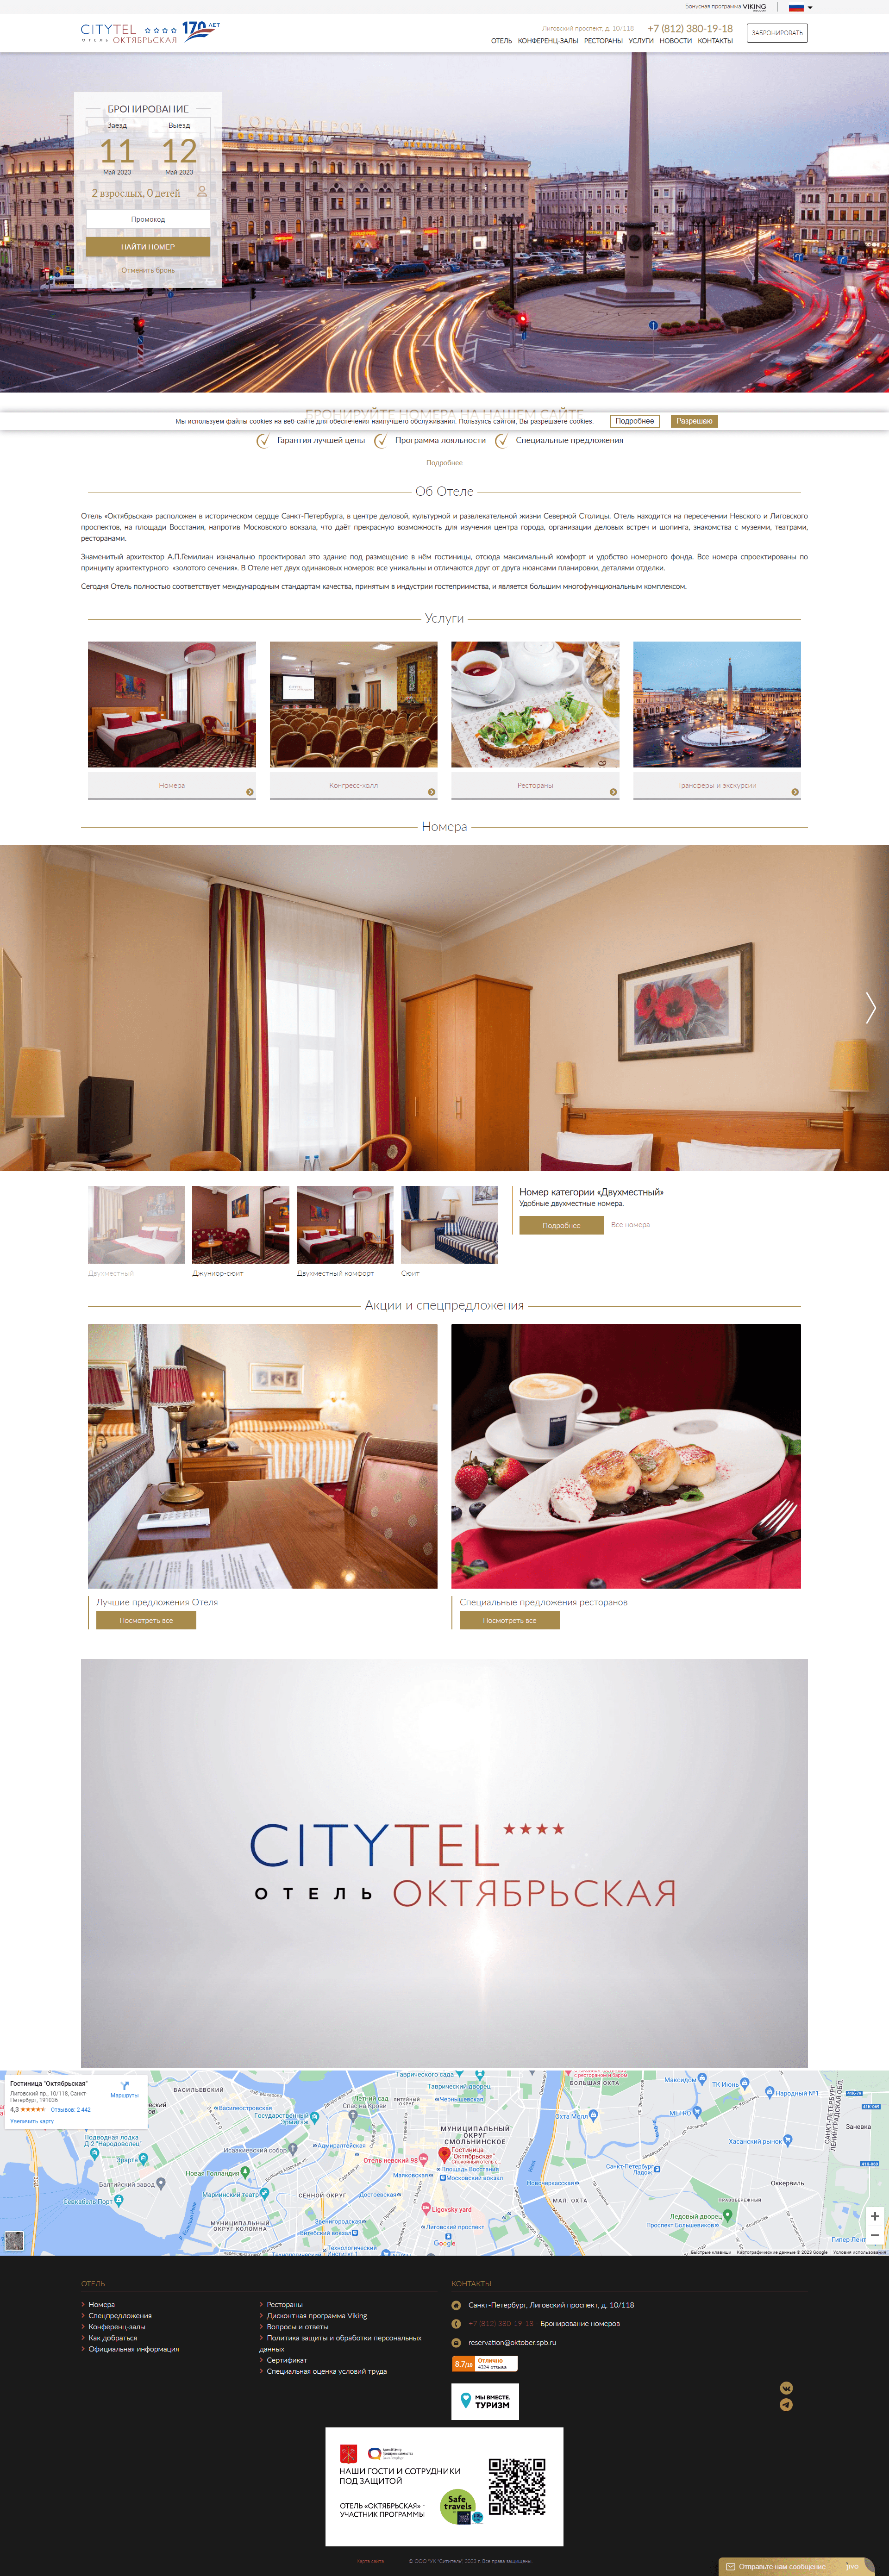 Пример oktober-hotel.spb.ru сайта из рекламной выдачи